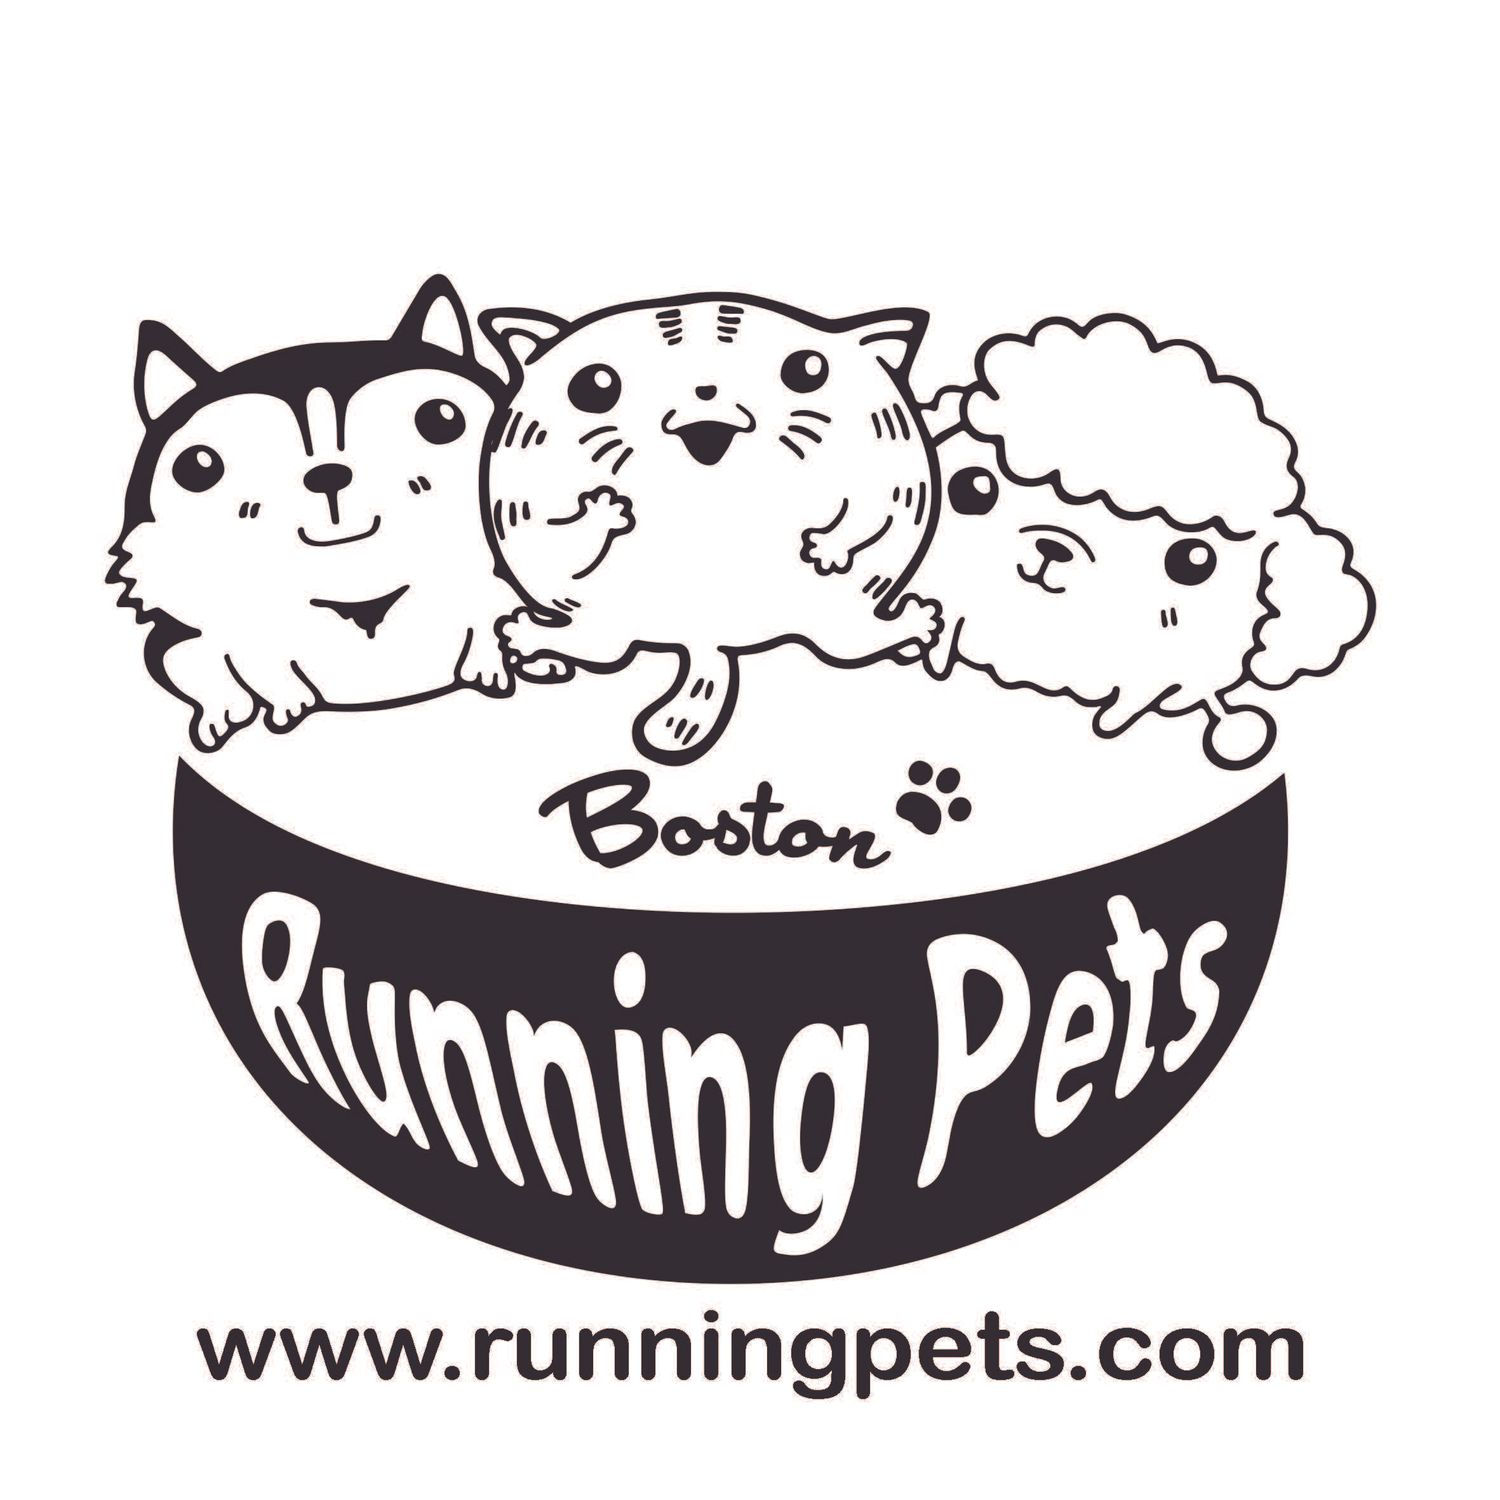 皮老闆寵物商行 - Boston Running Pets